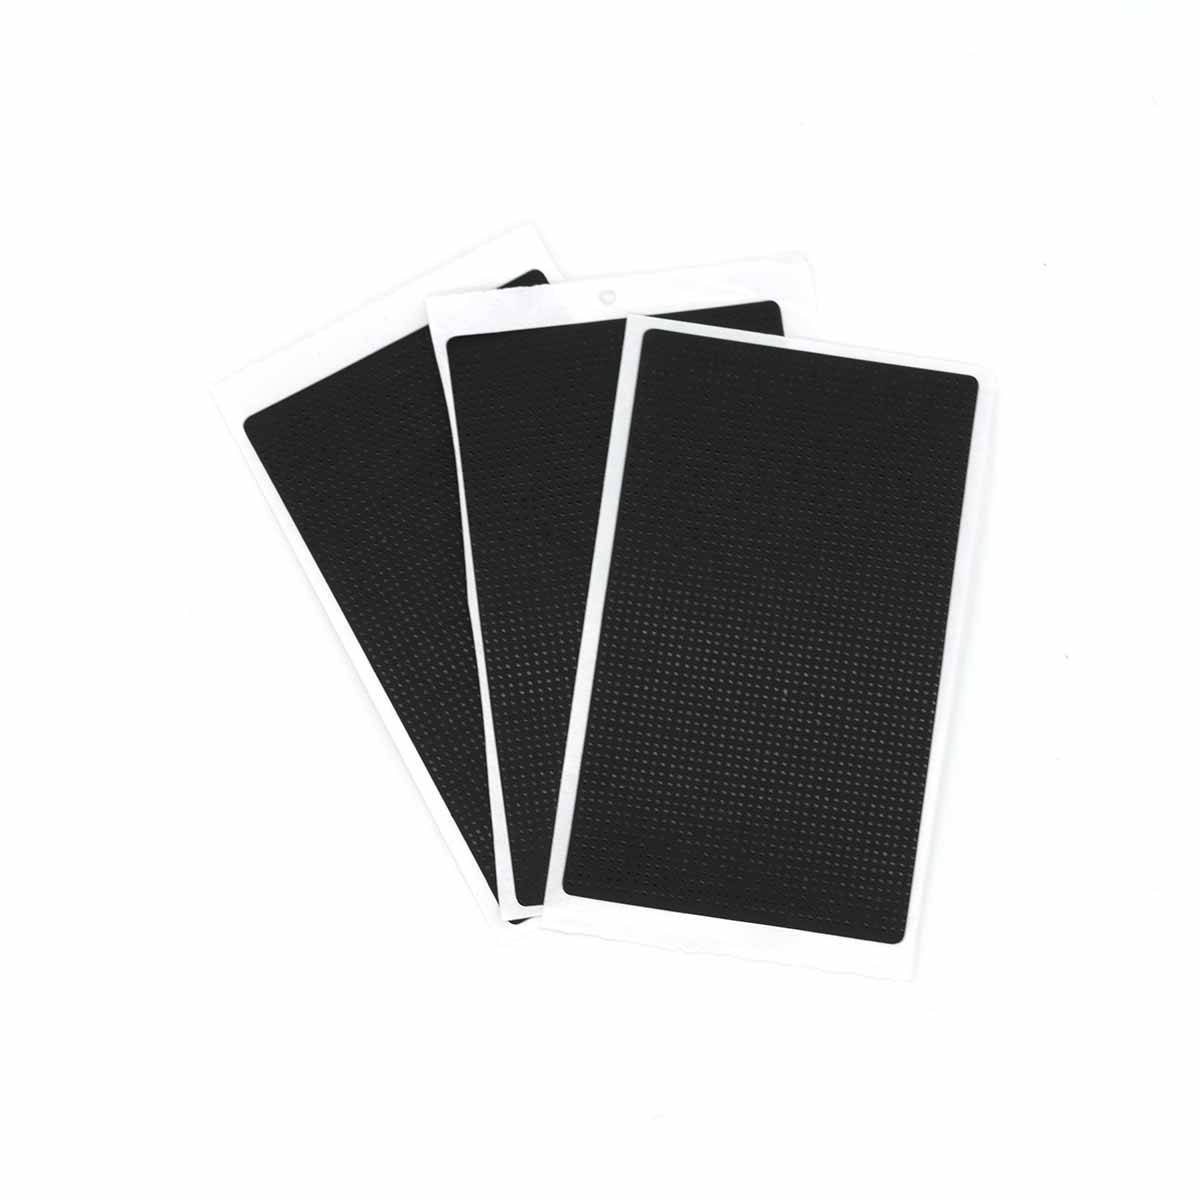 Sticker für Lenovo ThinkPad Touchpad Aufkleber Folie T410 T420 T430 T410S T420S T430S T530 T510 T520 W510 W520 W530